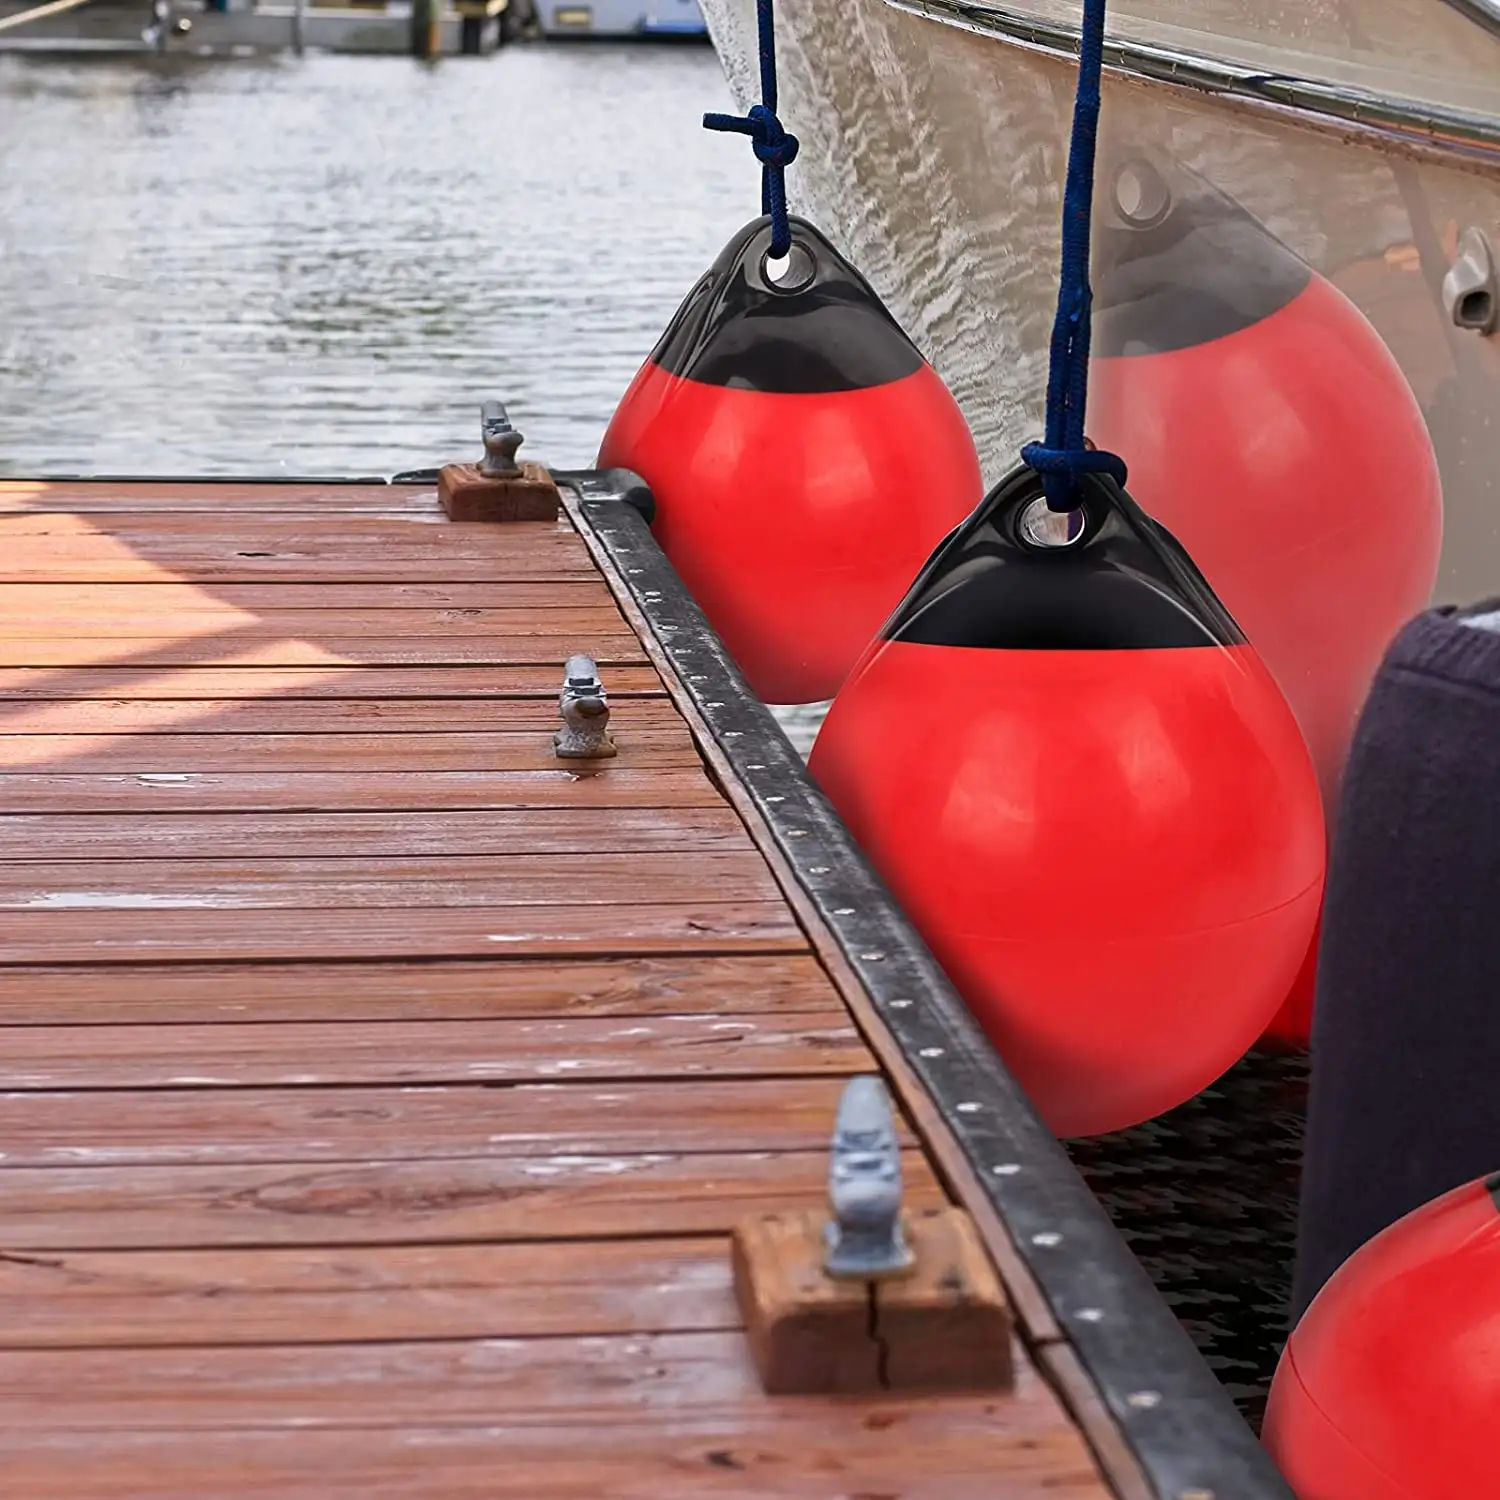 BOSKET-boya de anclaje redondo para defensa de barcos, Bola de parachoques inflable, protector de vinilo, boyas de amarre marino de protección, par